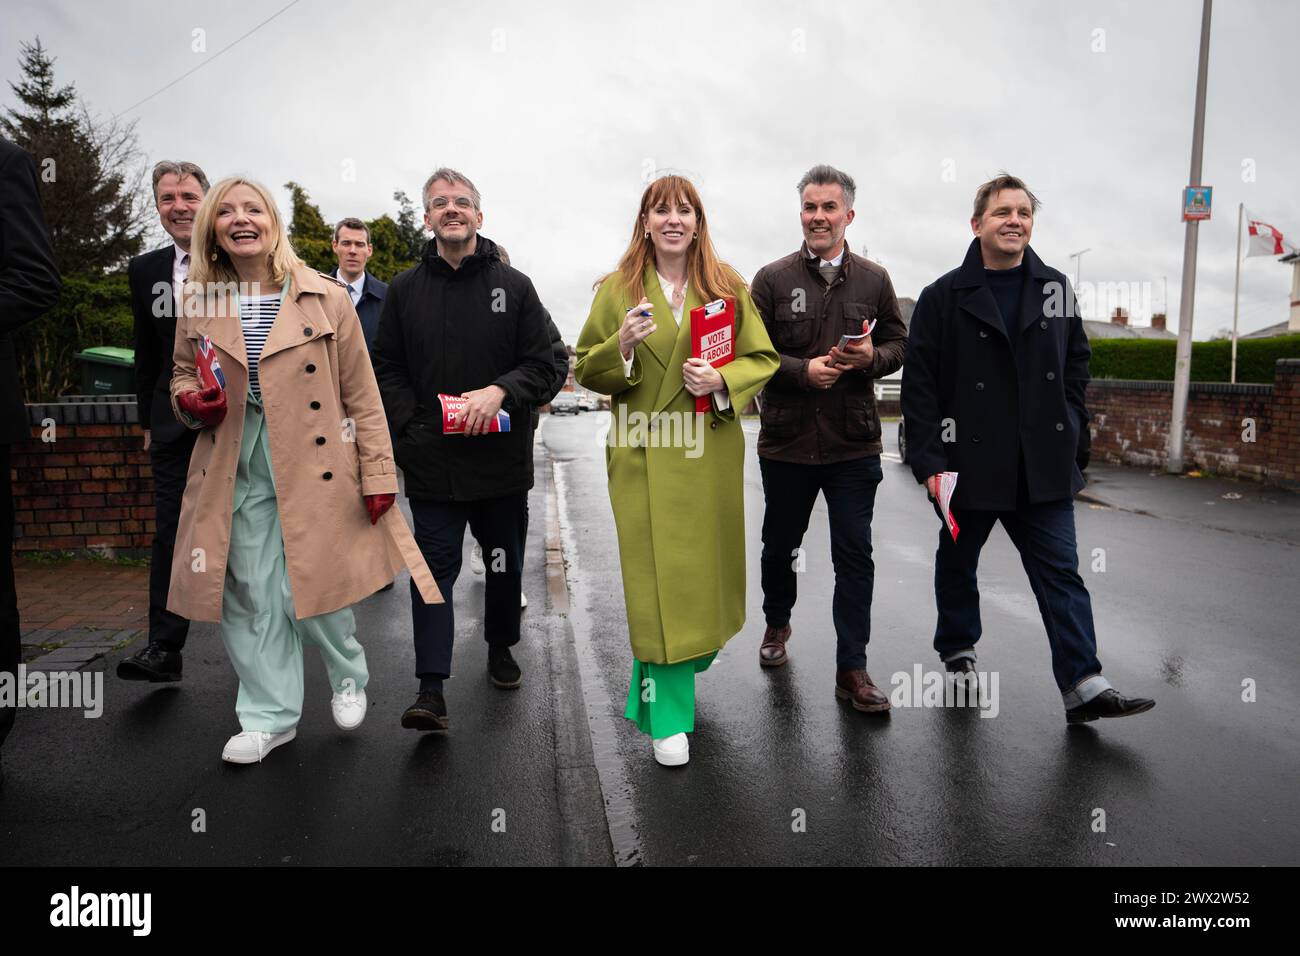 Angela Rayner, stellvertretende Vorsitzende der Labour Party, hat während ihres Treffens mit Bürgermeistern und Bürgermeisterkandidaten der Labour Party auf den Straßen von Birmingham gesessen. Bilddatum: Mittwoch, 27. März 2024. Stockfoto